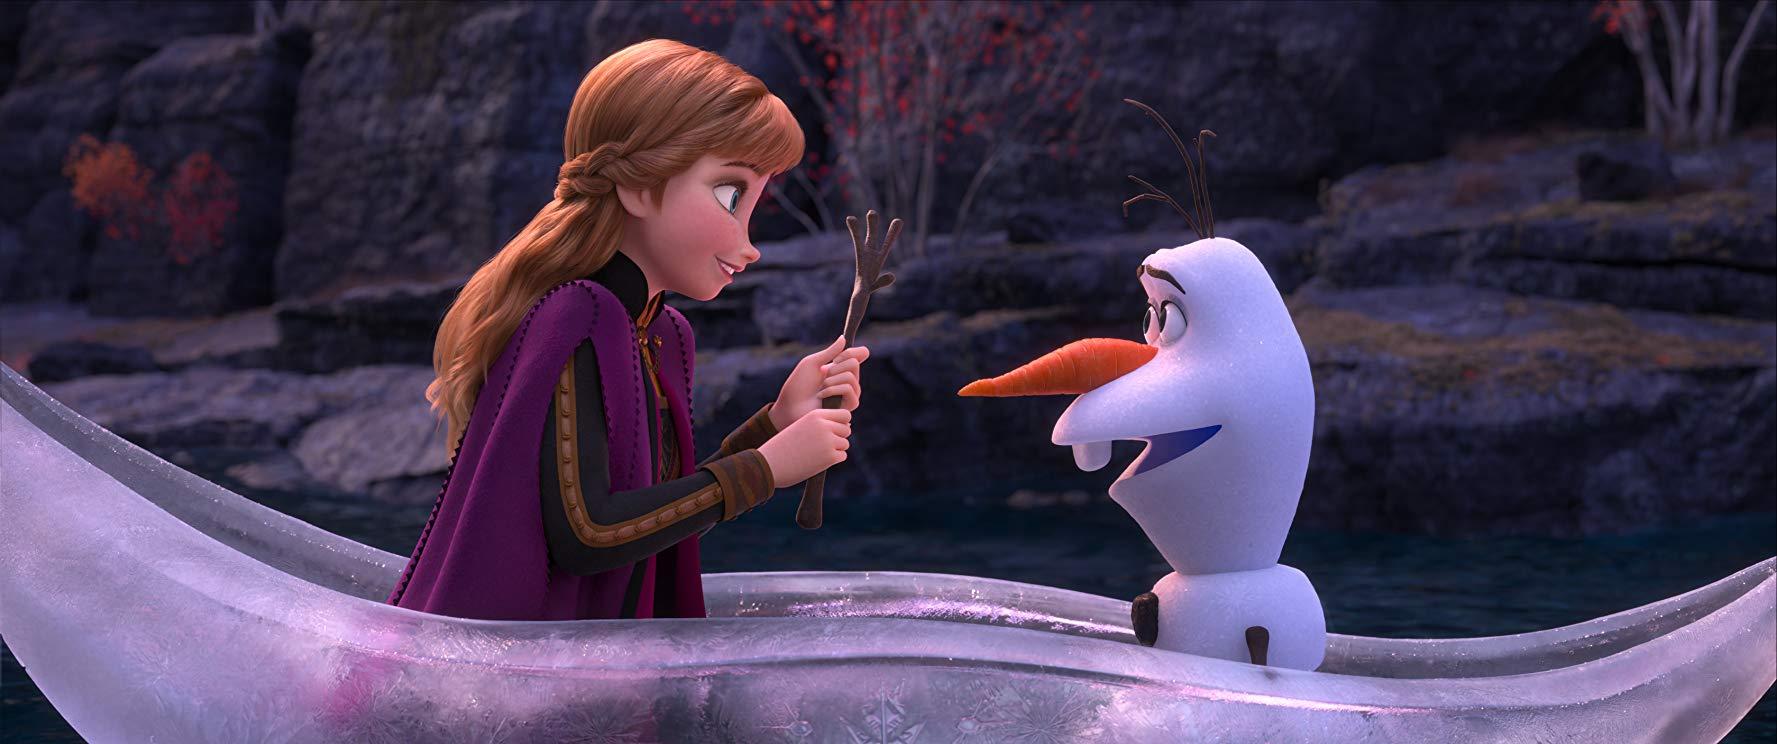 ตัวอย่างล่าสุด “Frozen 2” การออกเดินทางค้นหาความจริงอันน่าระทึกของ “เอลซ่า”